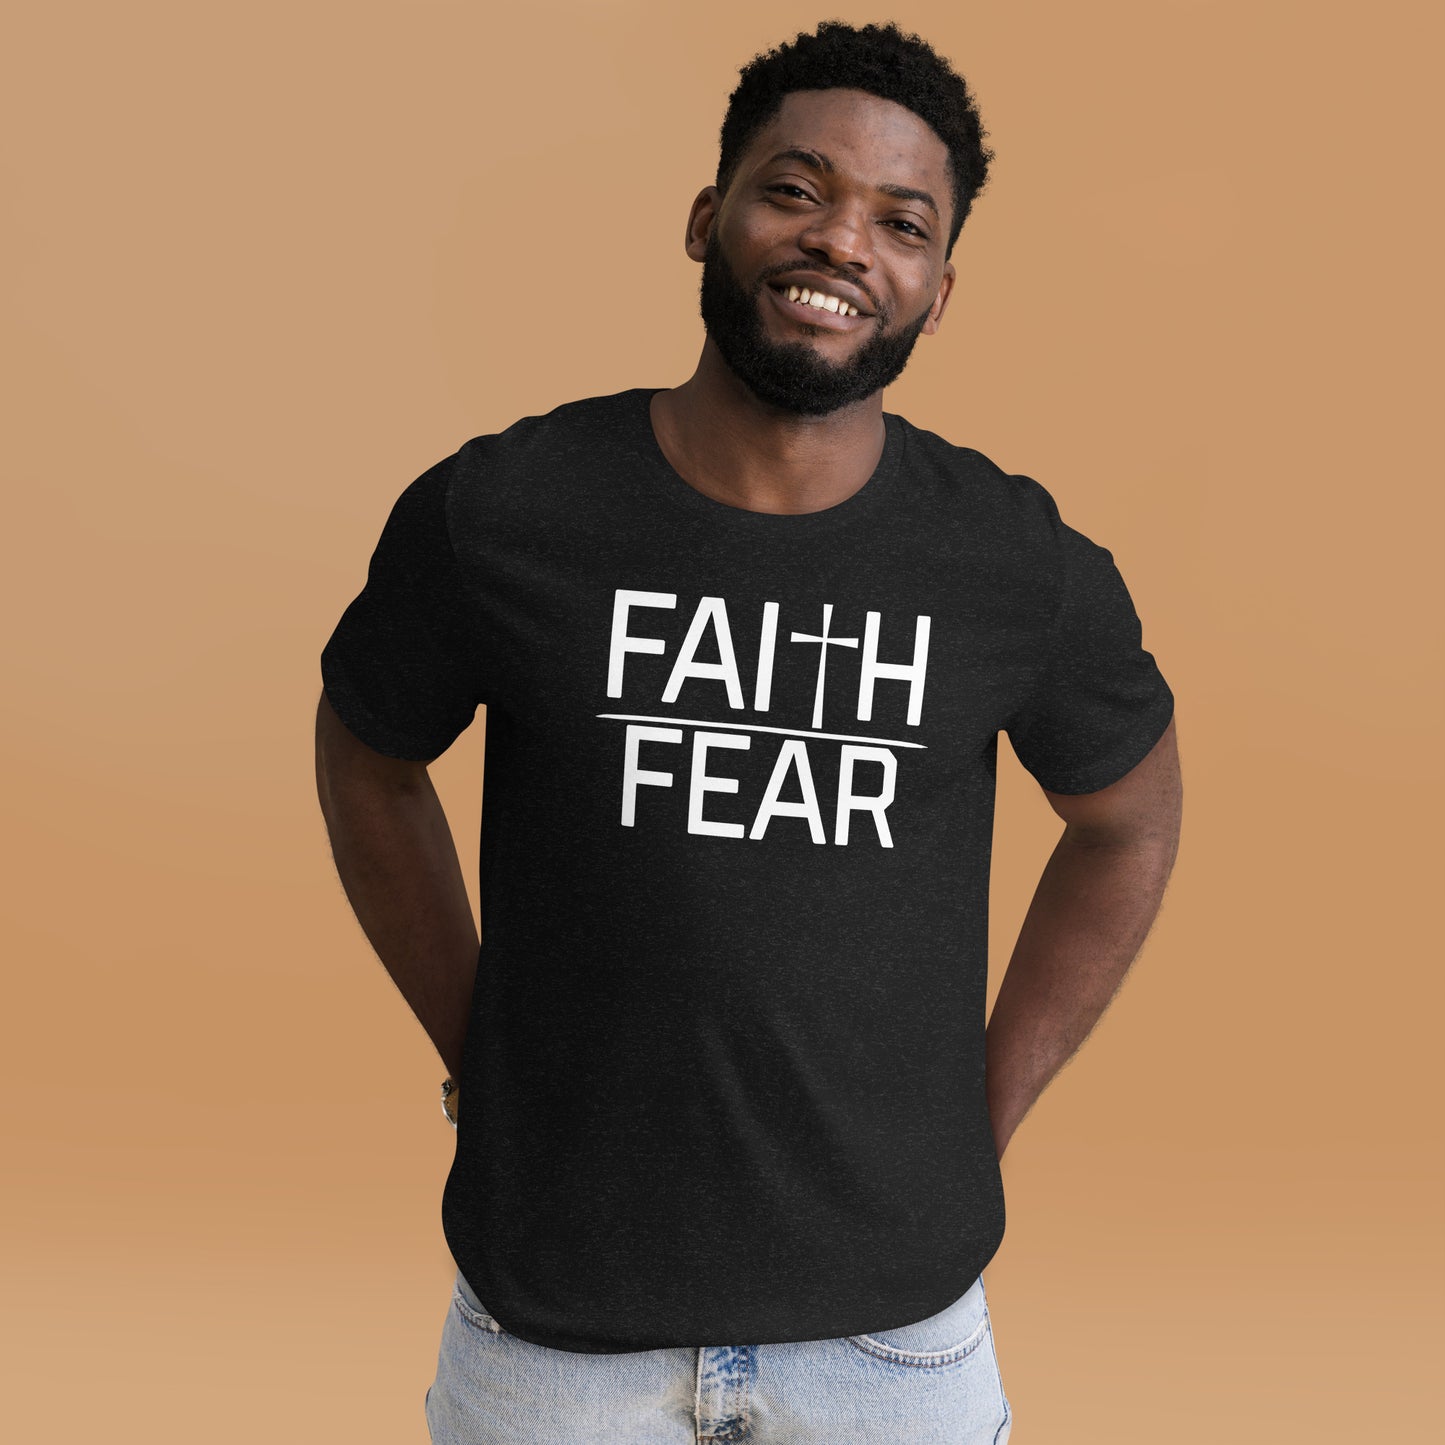 Faith over fear t-shirt